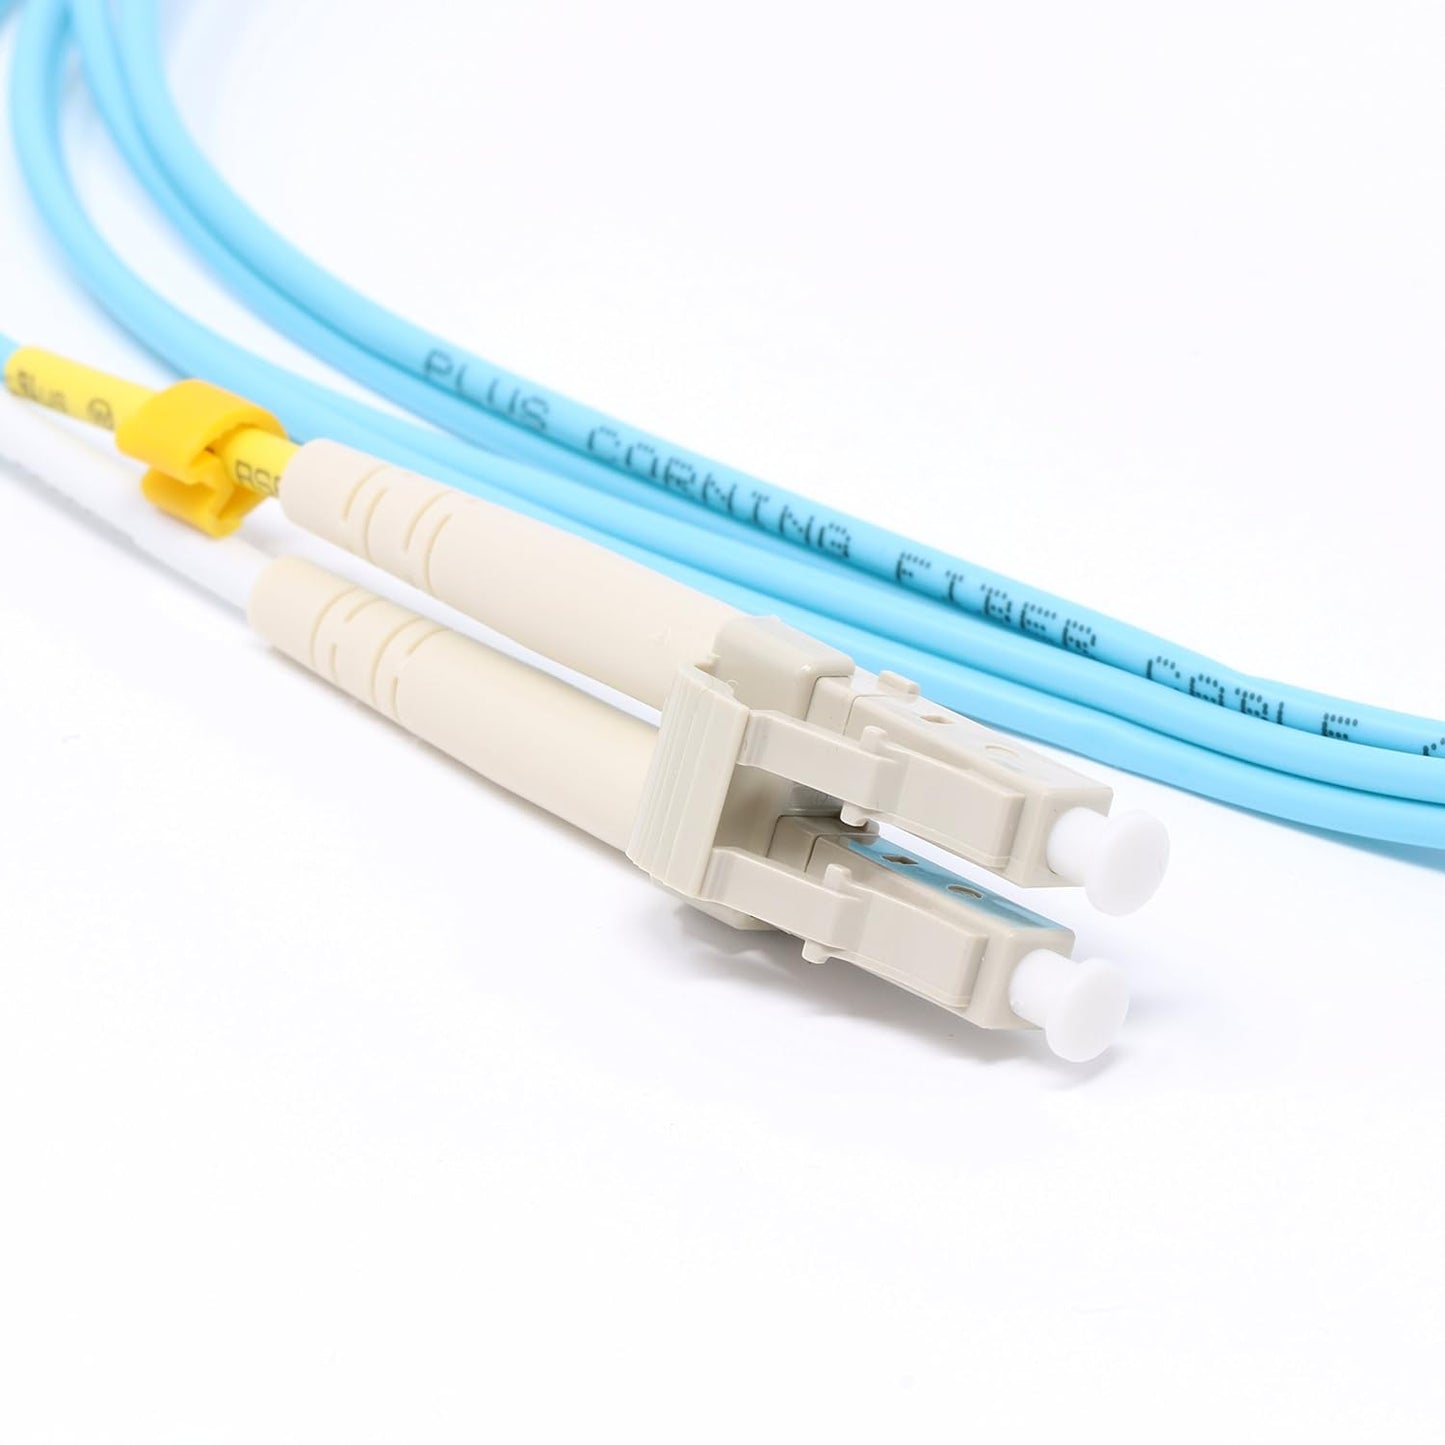 100 Meter 10Gb OM3 Multimode Duplex Fiber Optic Cable (50/125) - LC to LC - Aqua